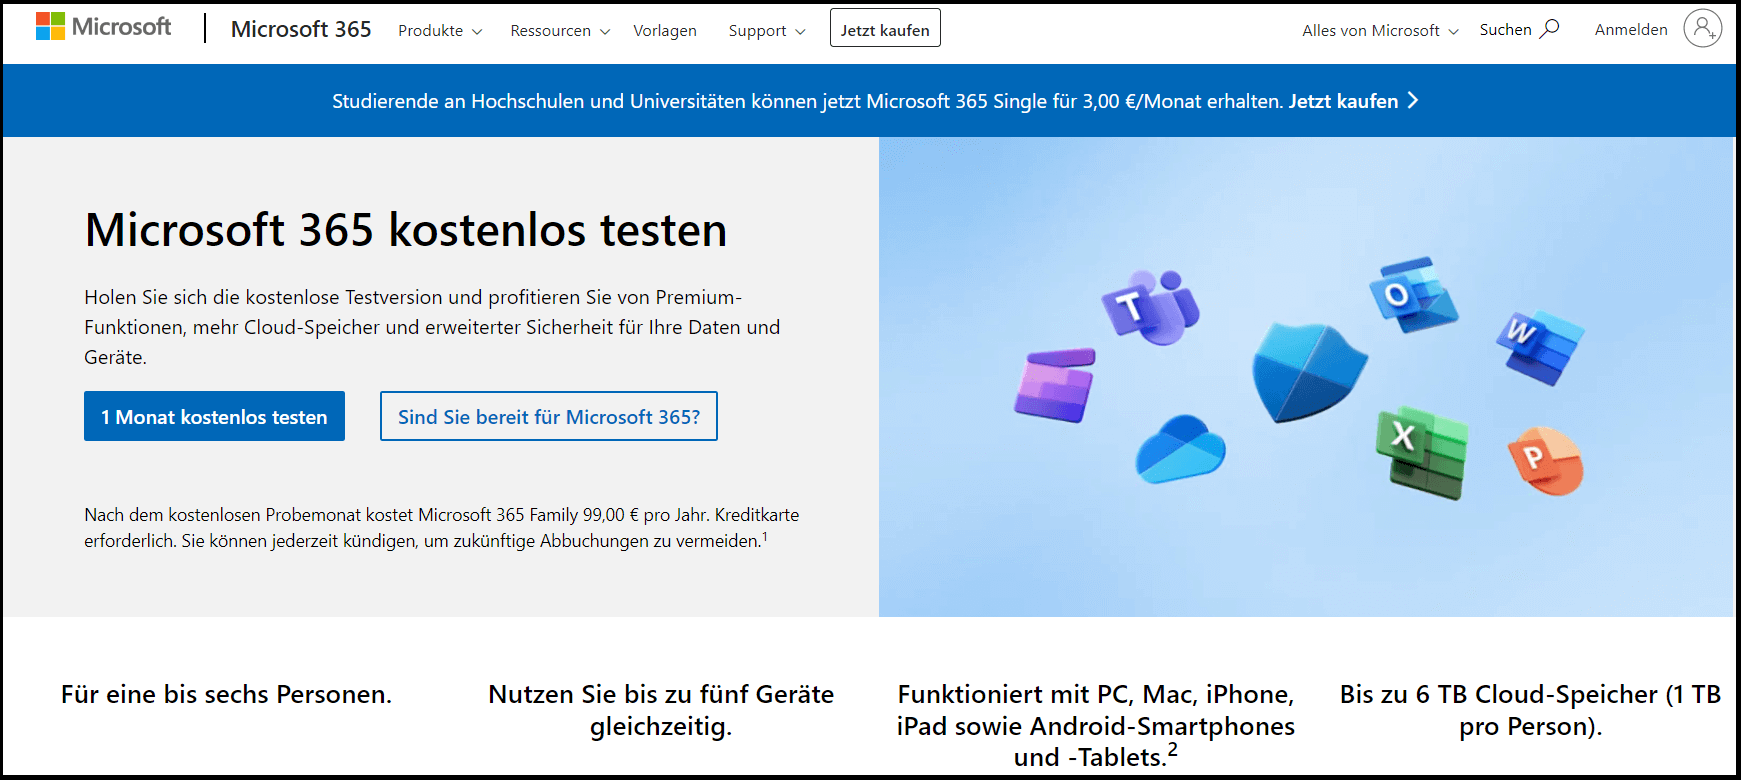 Die Microsoft-Seite mit dem kostenlosen Testangebot für Microsoft 365